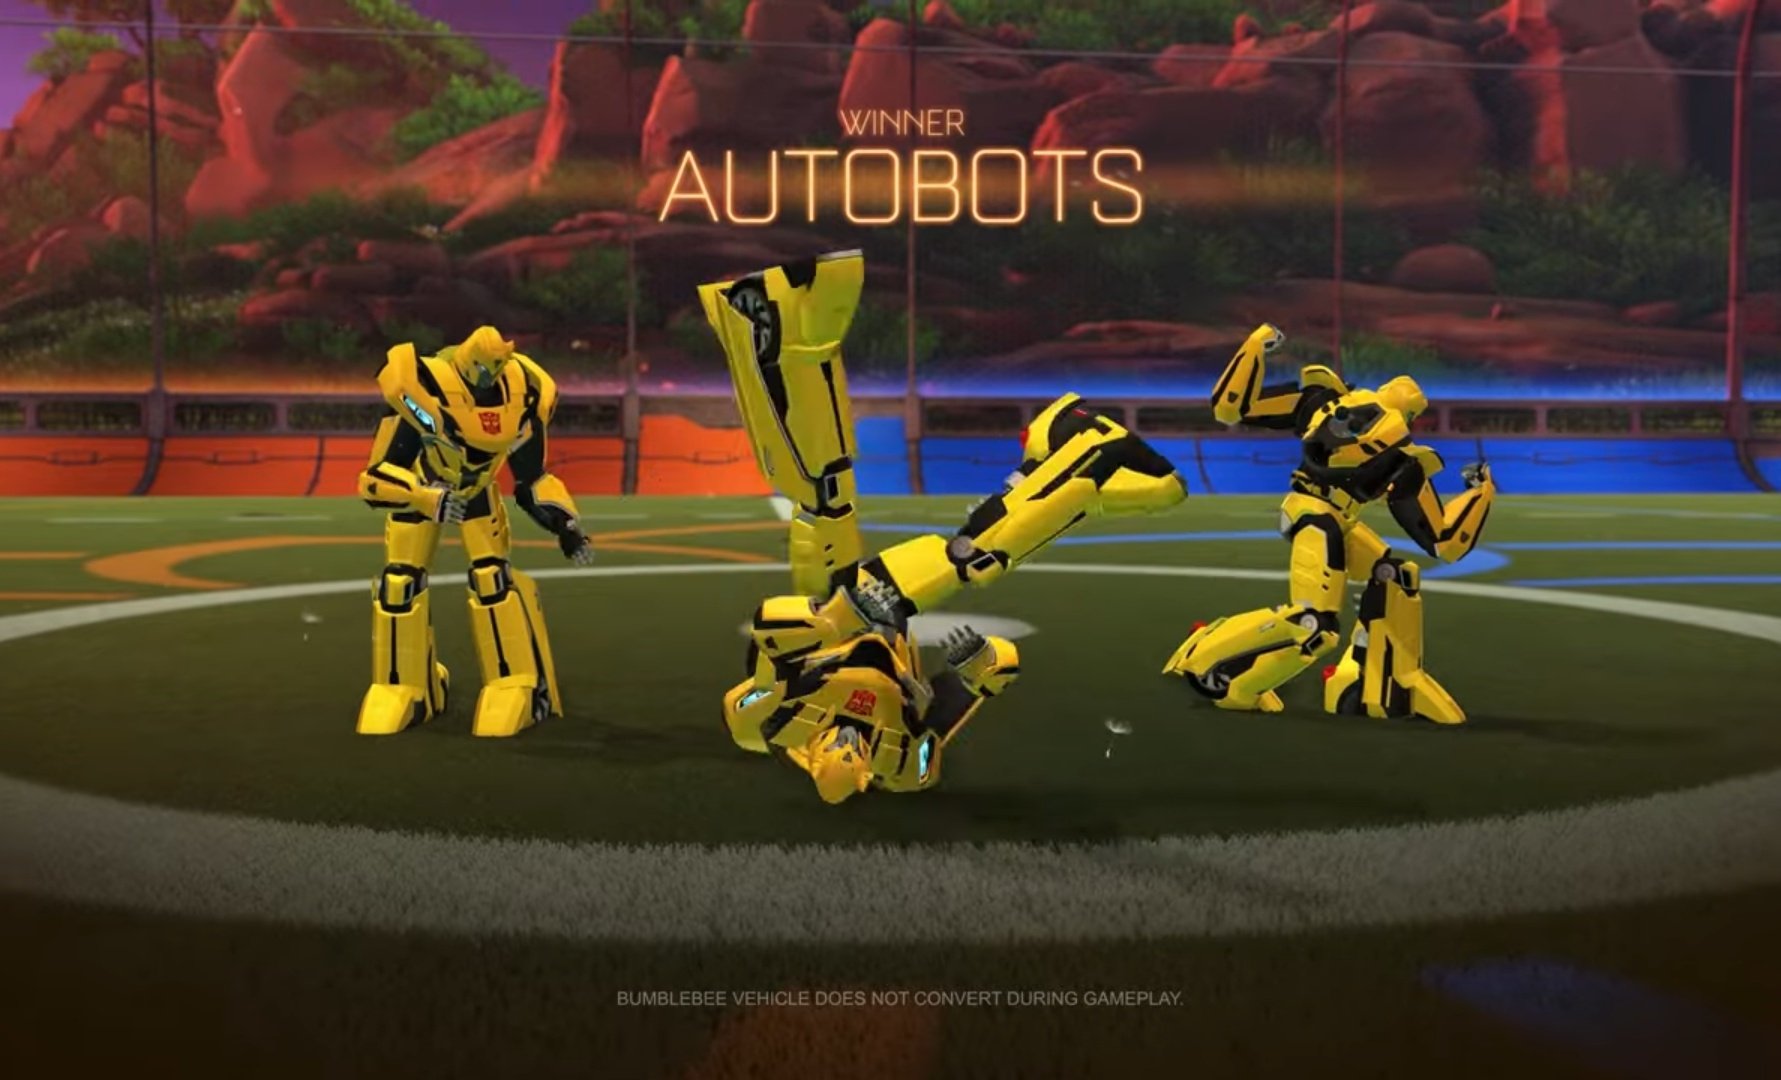 Rocket League X Transformers, la nueva colaboración de los autos futboleros. 5